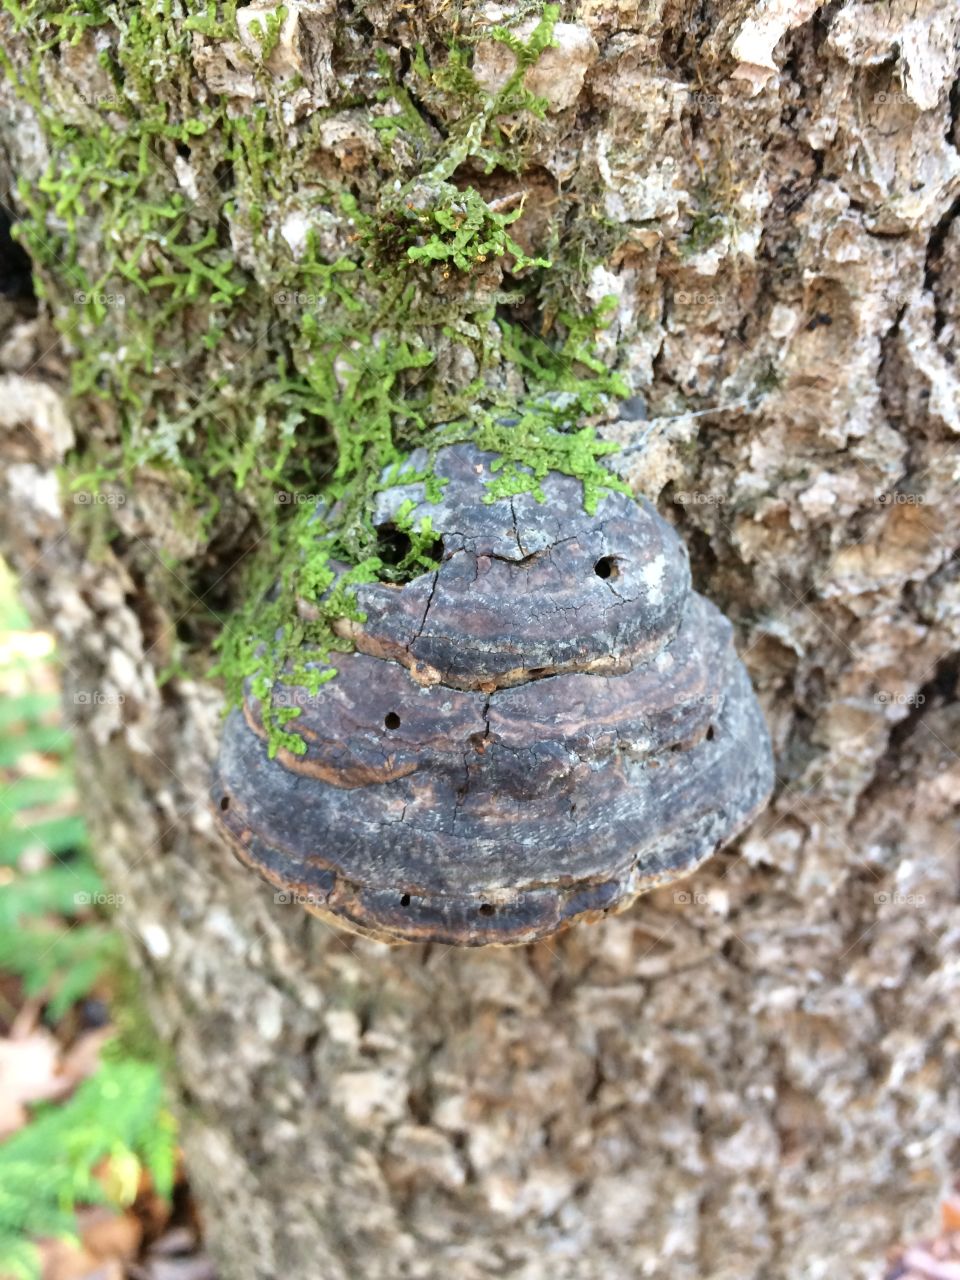 Mushroom on dying tree